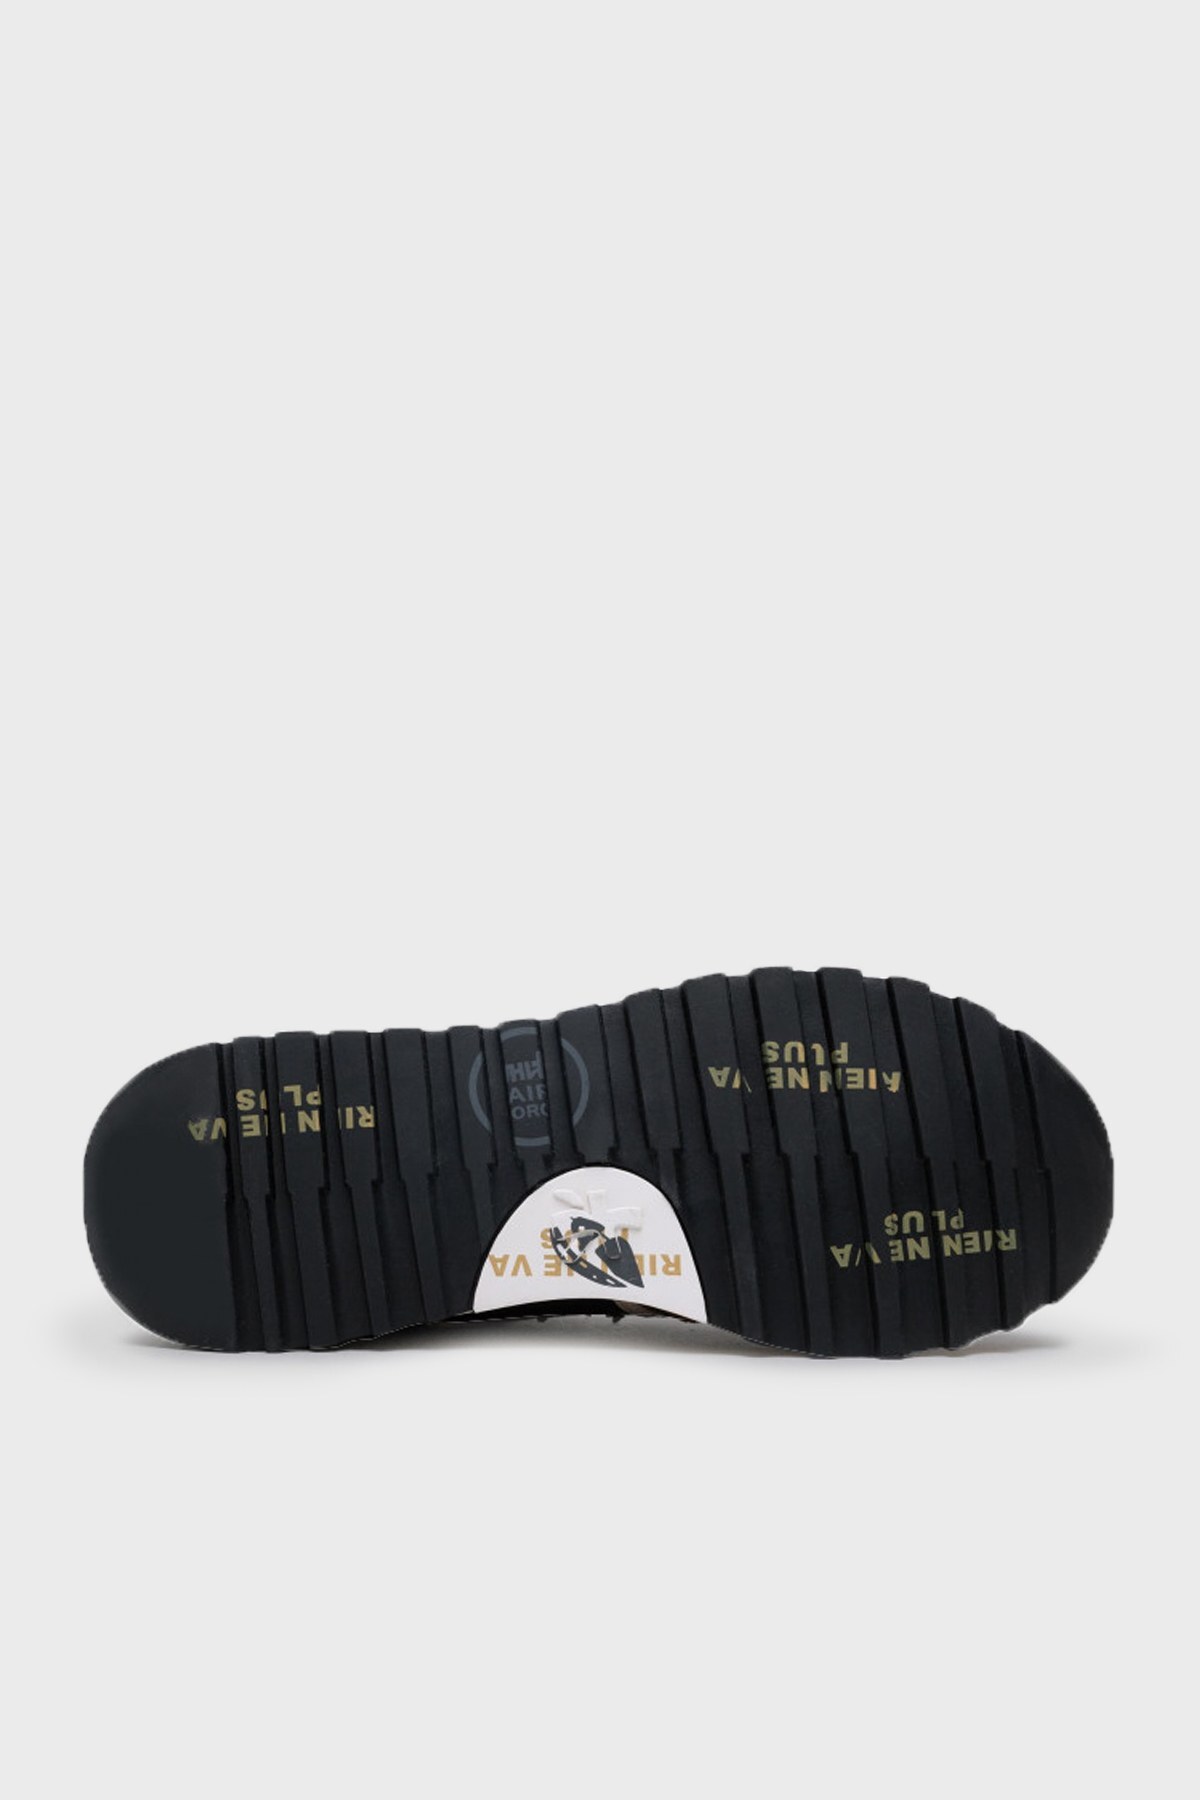 Premiata Baskılı Bağcıklı Sneaker Erkek Ayakkabı LANDER 5361 KAHVE